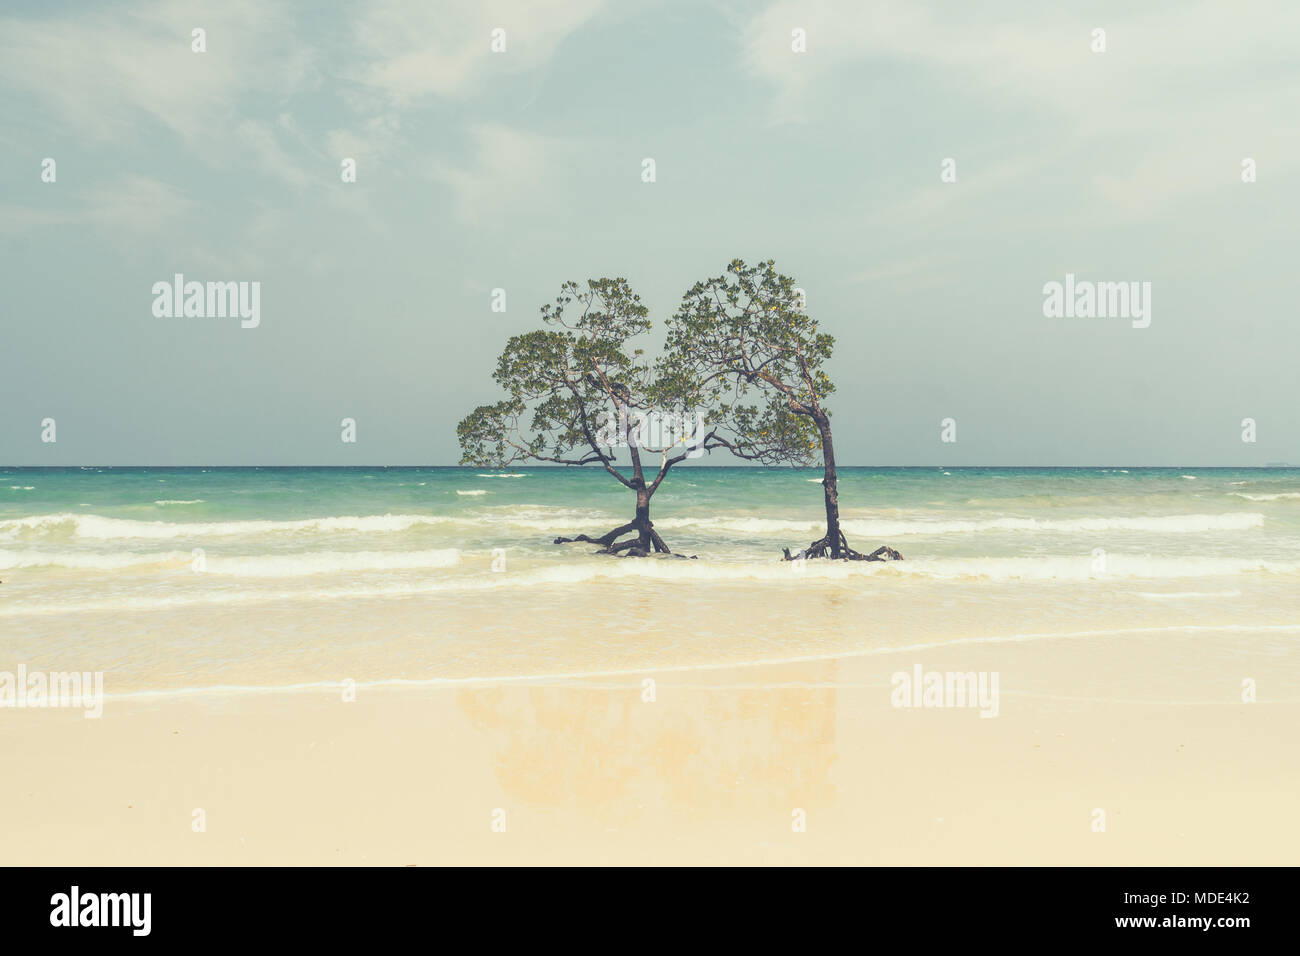 Seul palétuvier dans l'argile, le style rétro. De beaux arbres de mangrove avec de luxuriants de la couronne à feuilles caduques dans l'eau de mer sur une plage propre sur l'arrière-plan de t Banque D'Images